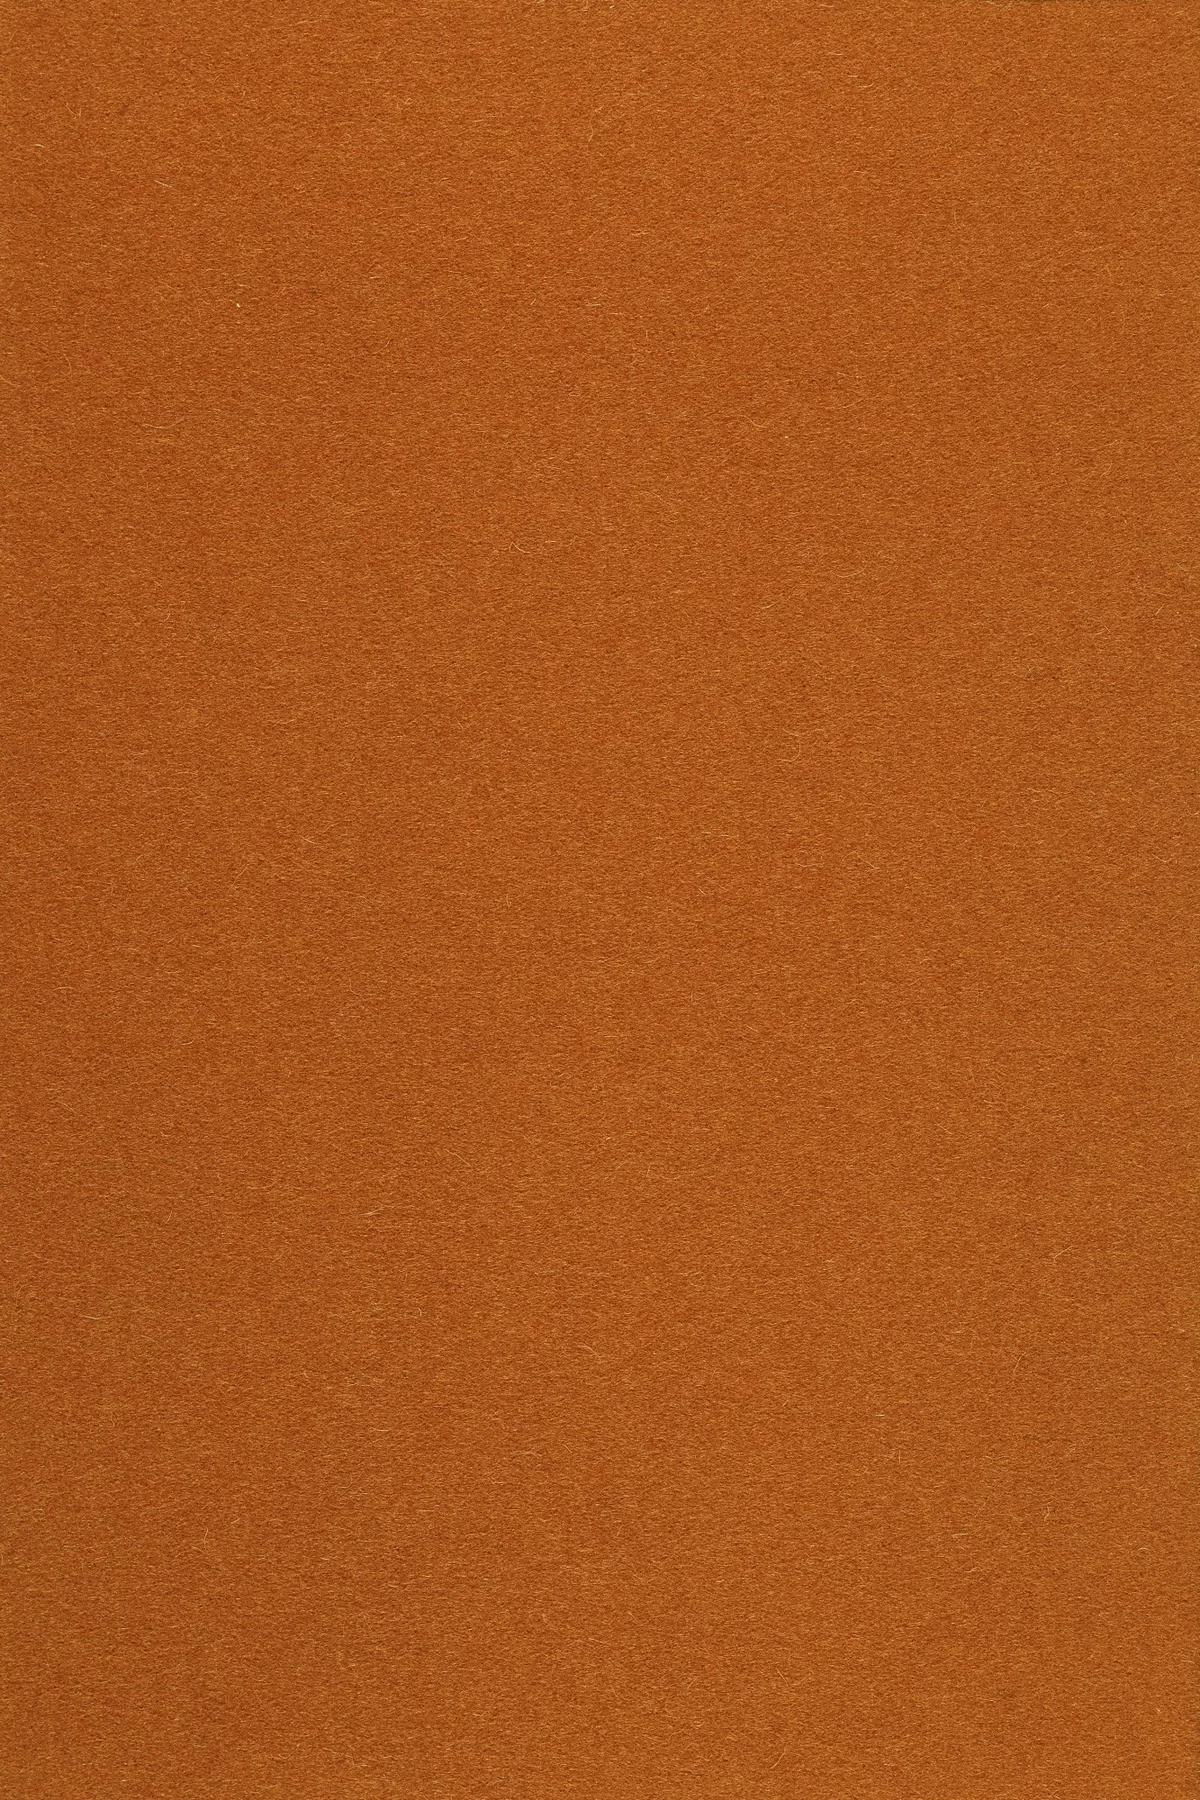 Fabric sample Divina 3 552 orange